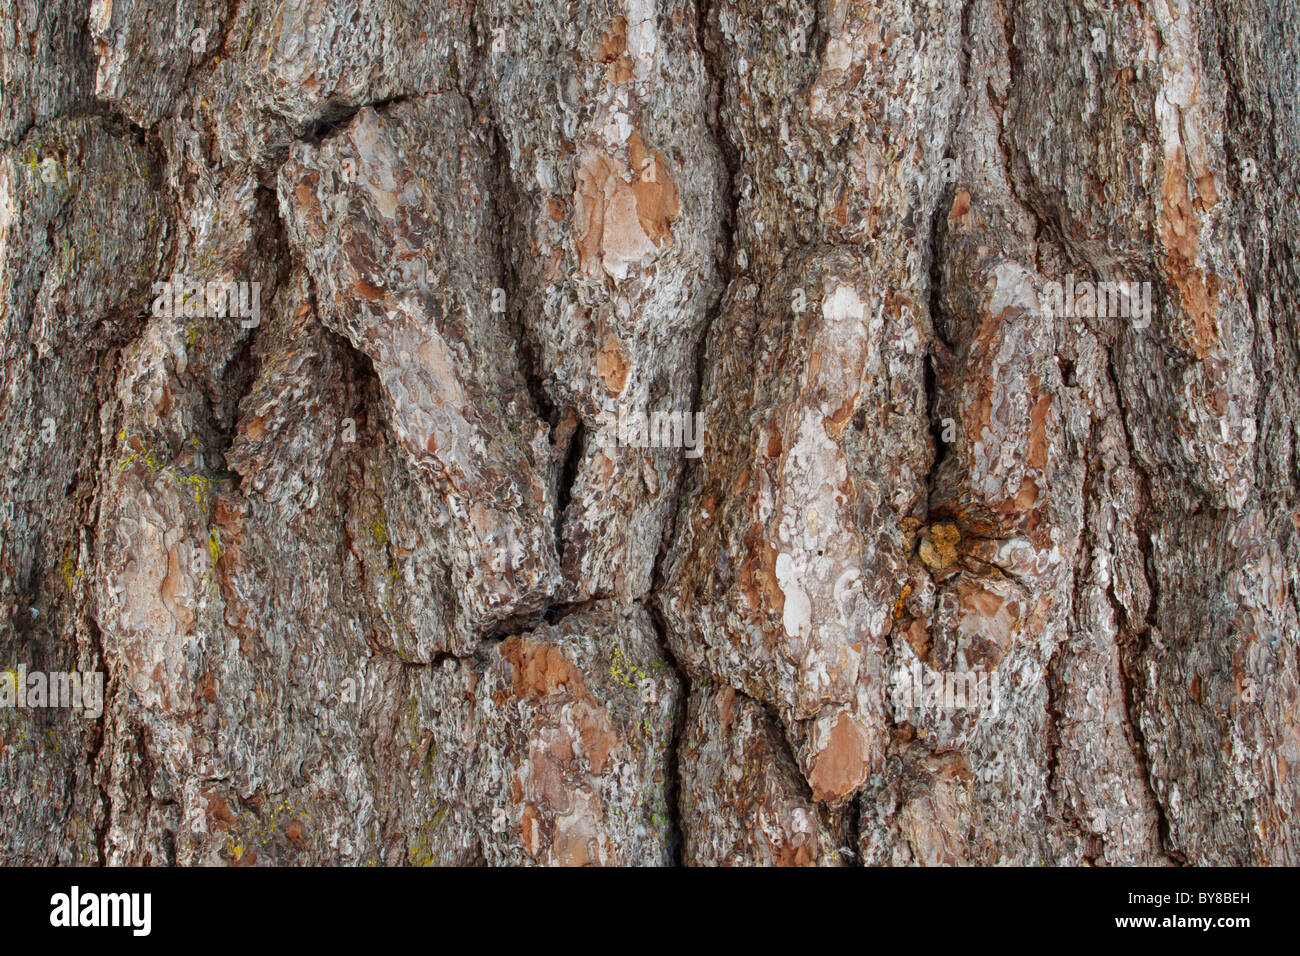 Dettaglio di corteccia di un massiccio Abete bianco; fotografia scattata in una foresta vergine nel nord MN dove alcuni alberi data centinaia di anni. Foto Stock